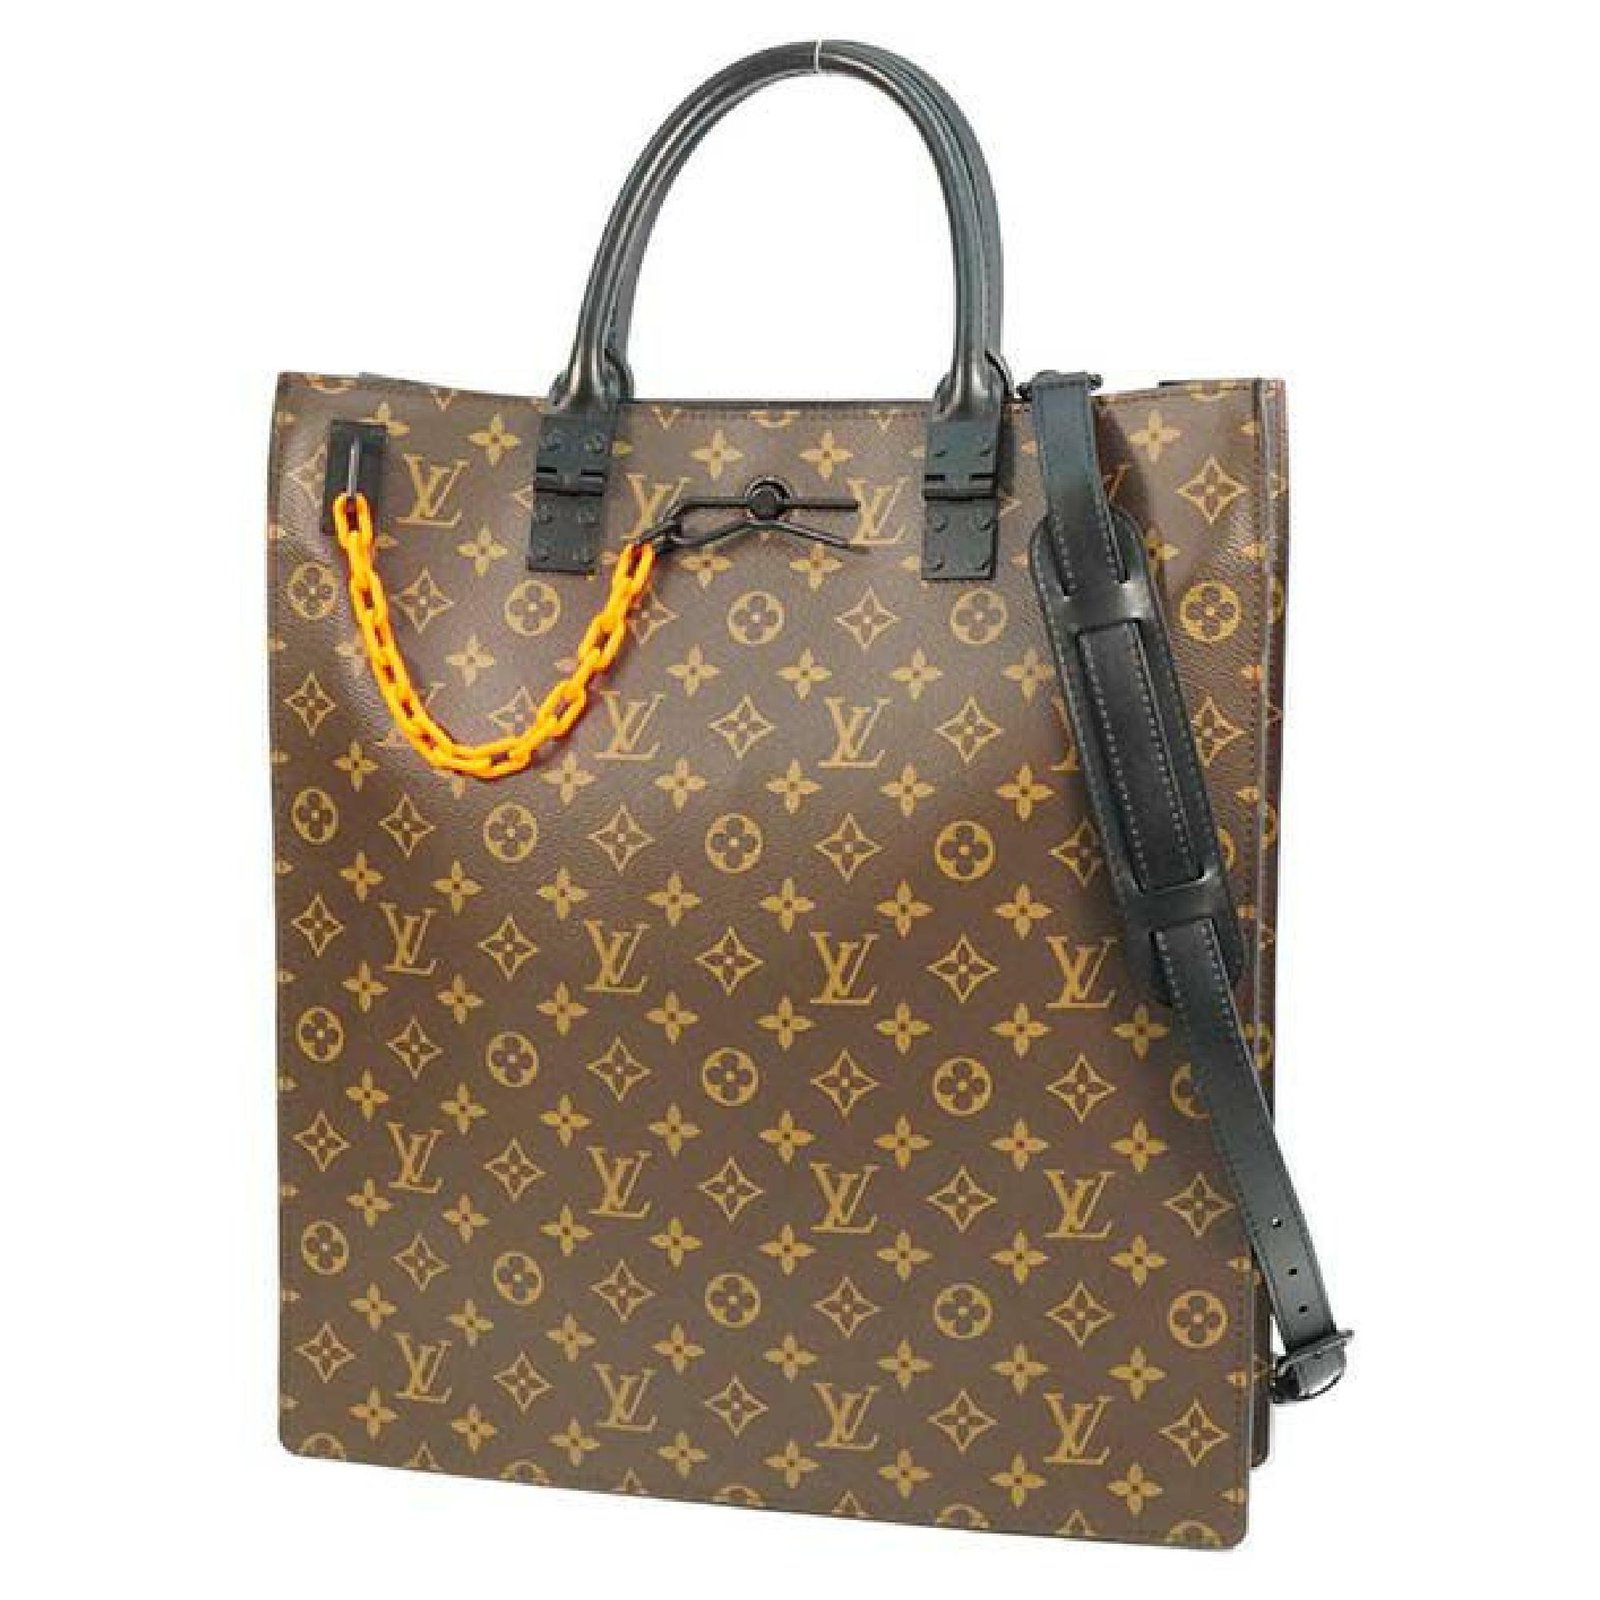 Louis Vuitton 2WAY shoulder sac Plat Virgil Abloh unisex tote bag